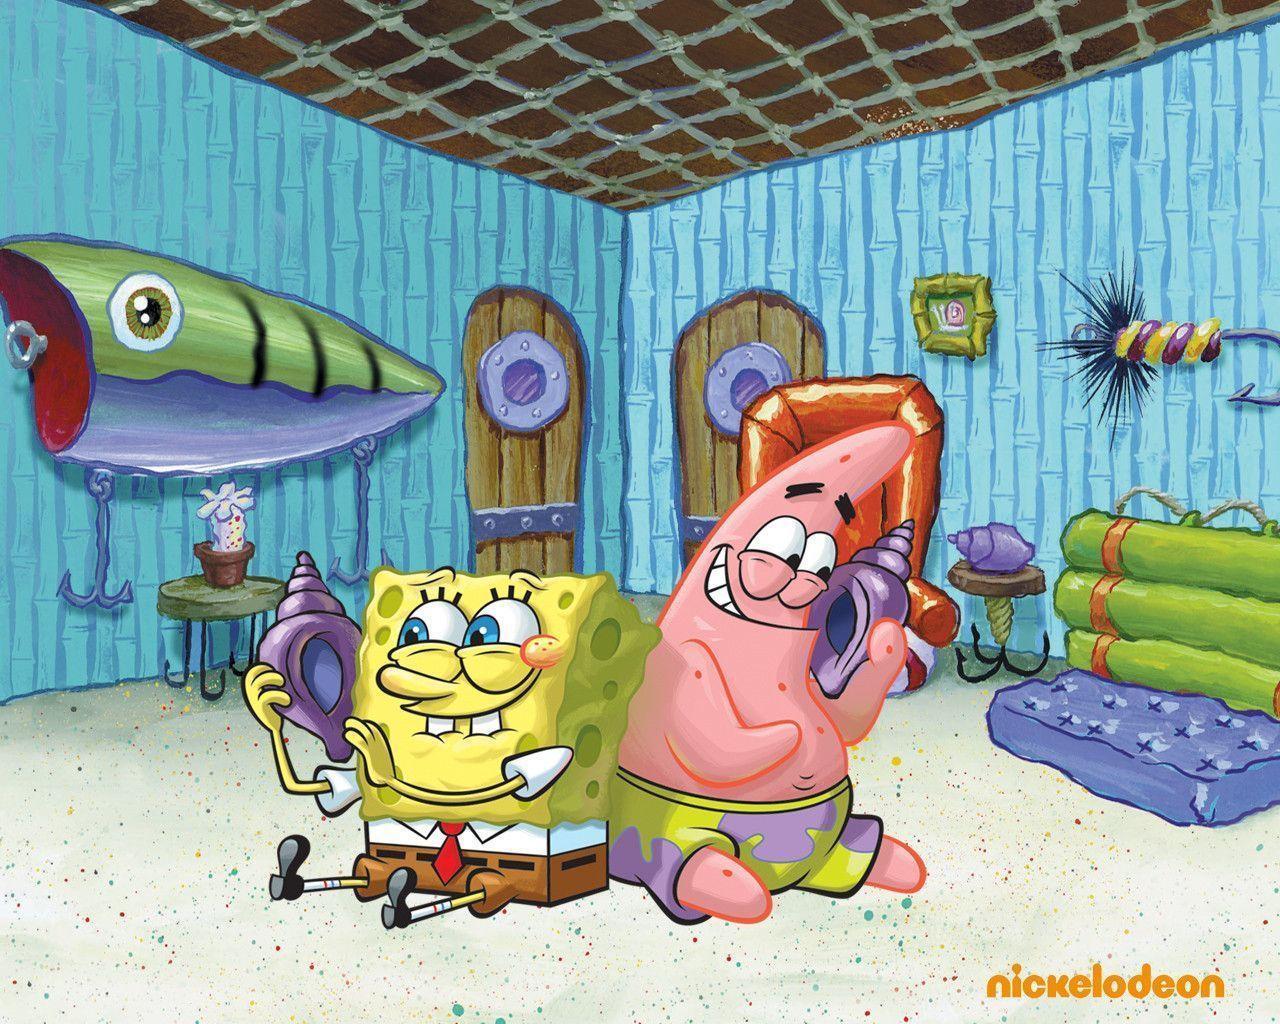 Spongebob & Patrick Squarepants Wallpaper 31281727